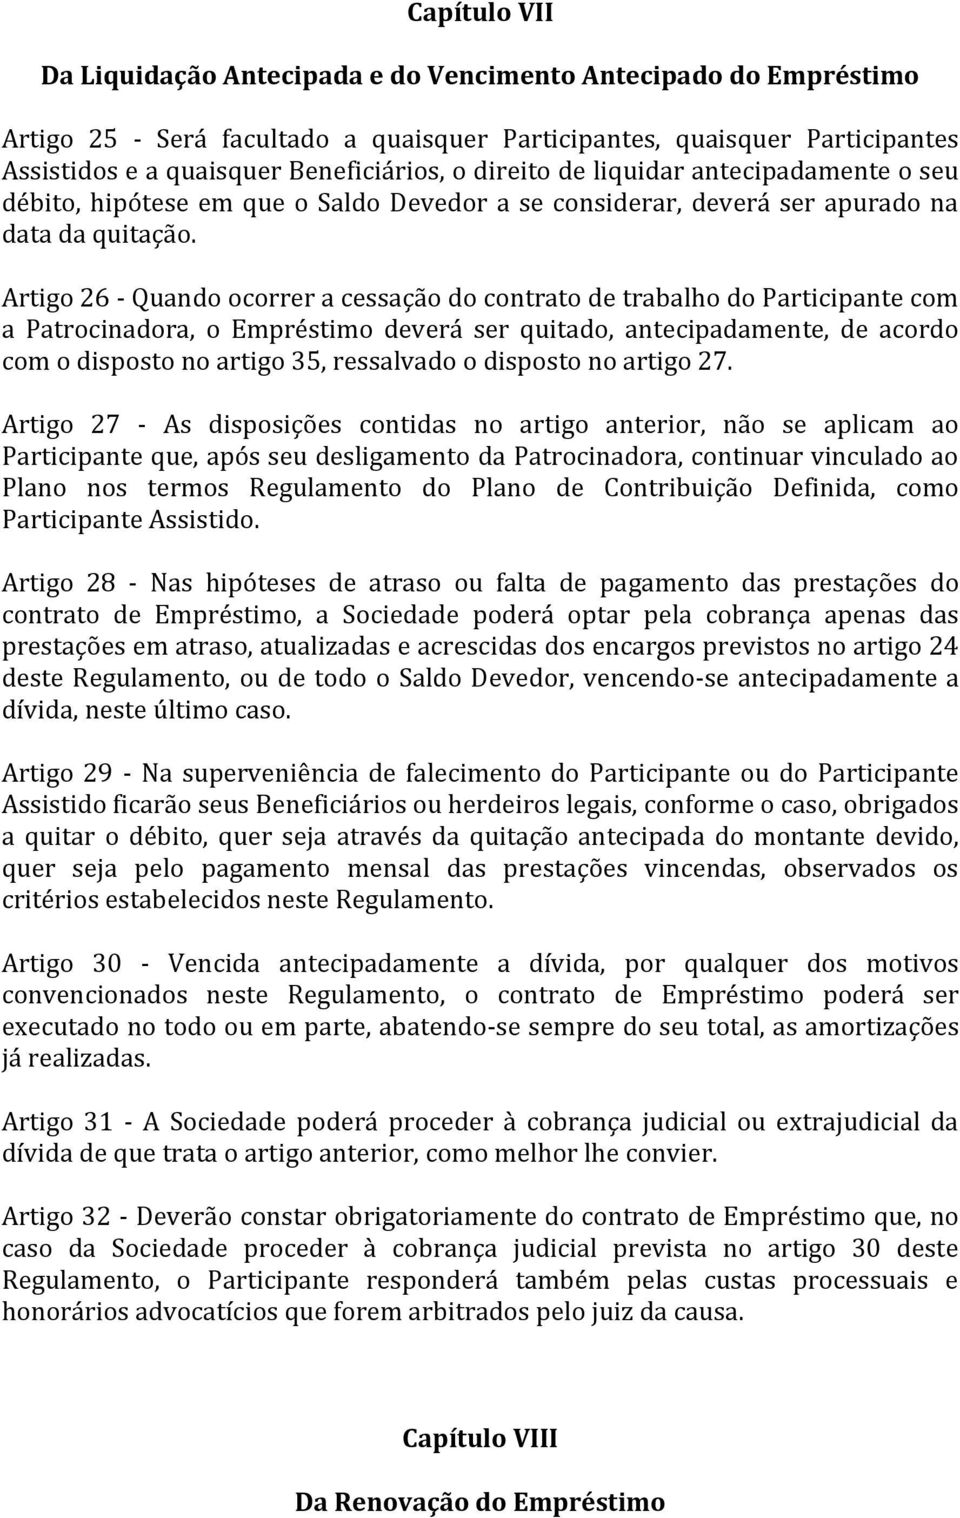 Artigo 26 - Quando ocorrer a cessação do contrato de trabalho do Participante com a Patrocinadora, o Empréstimo deverá ser quitado, antecipadamente, de acordo com o disposto no artigo 35, ressalvado